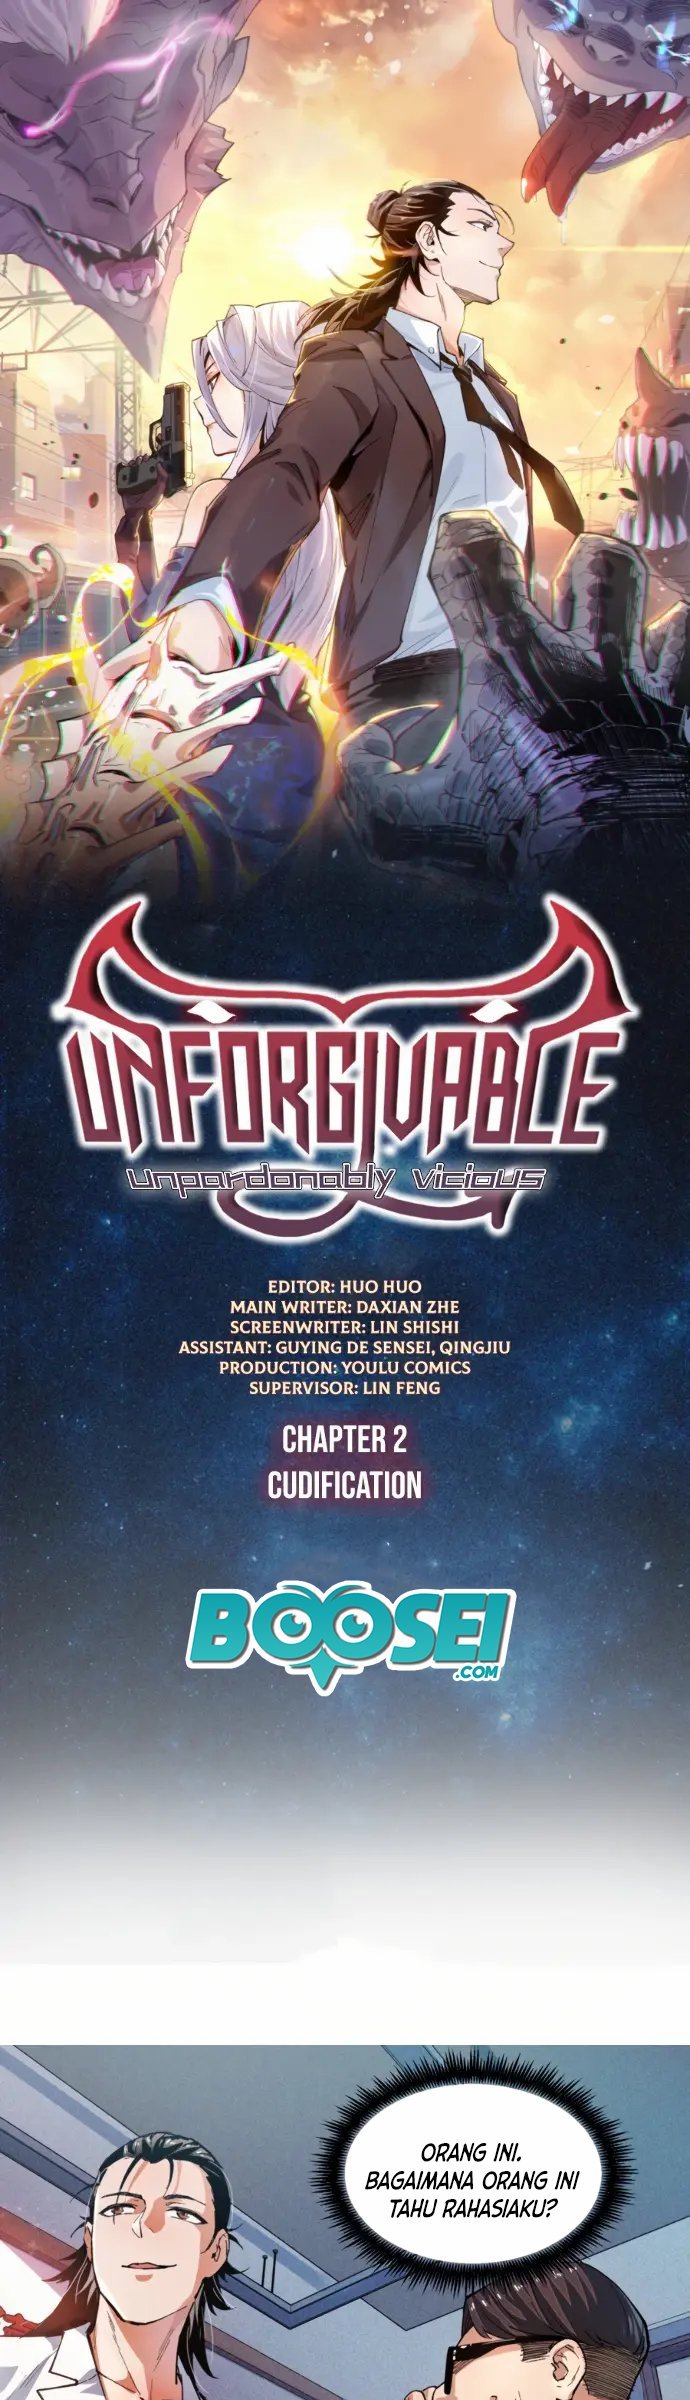 UNFORGIVABLE! Unpardonably Vicious! Chapter 2